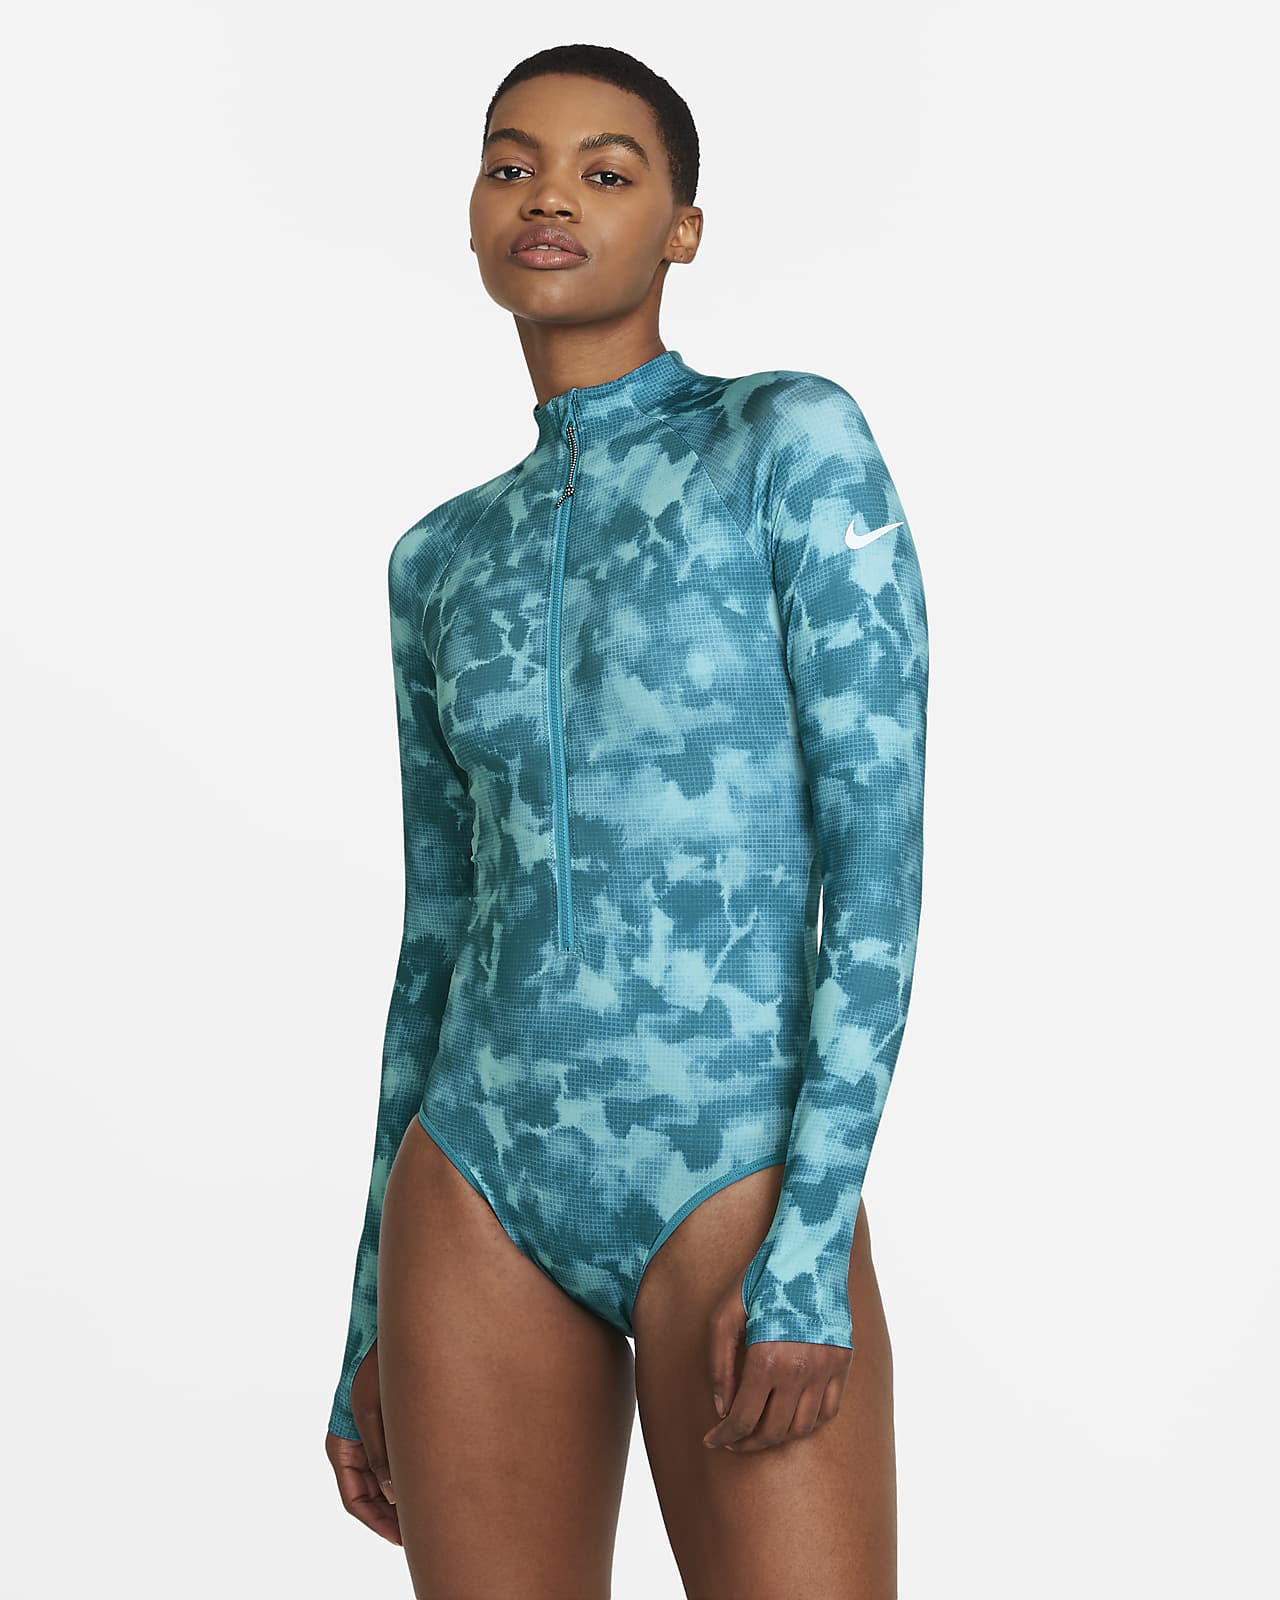 Nike Women's Long-Sleeve 1-Piece Swimsuit.